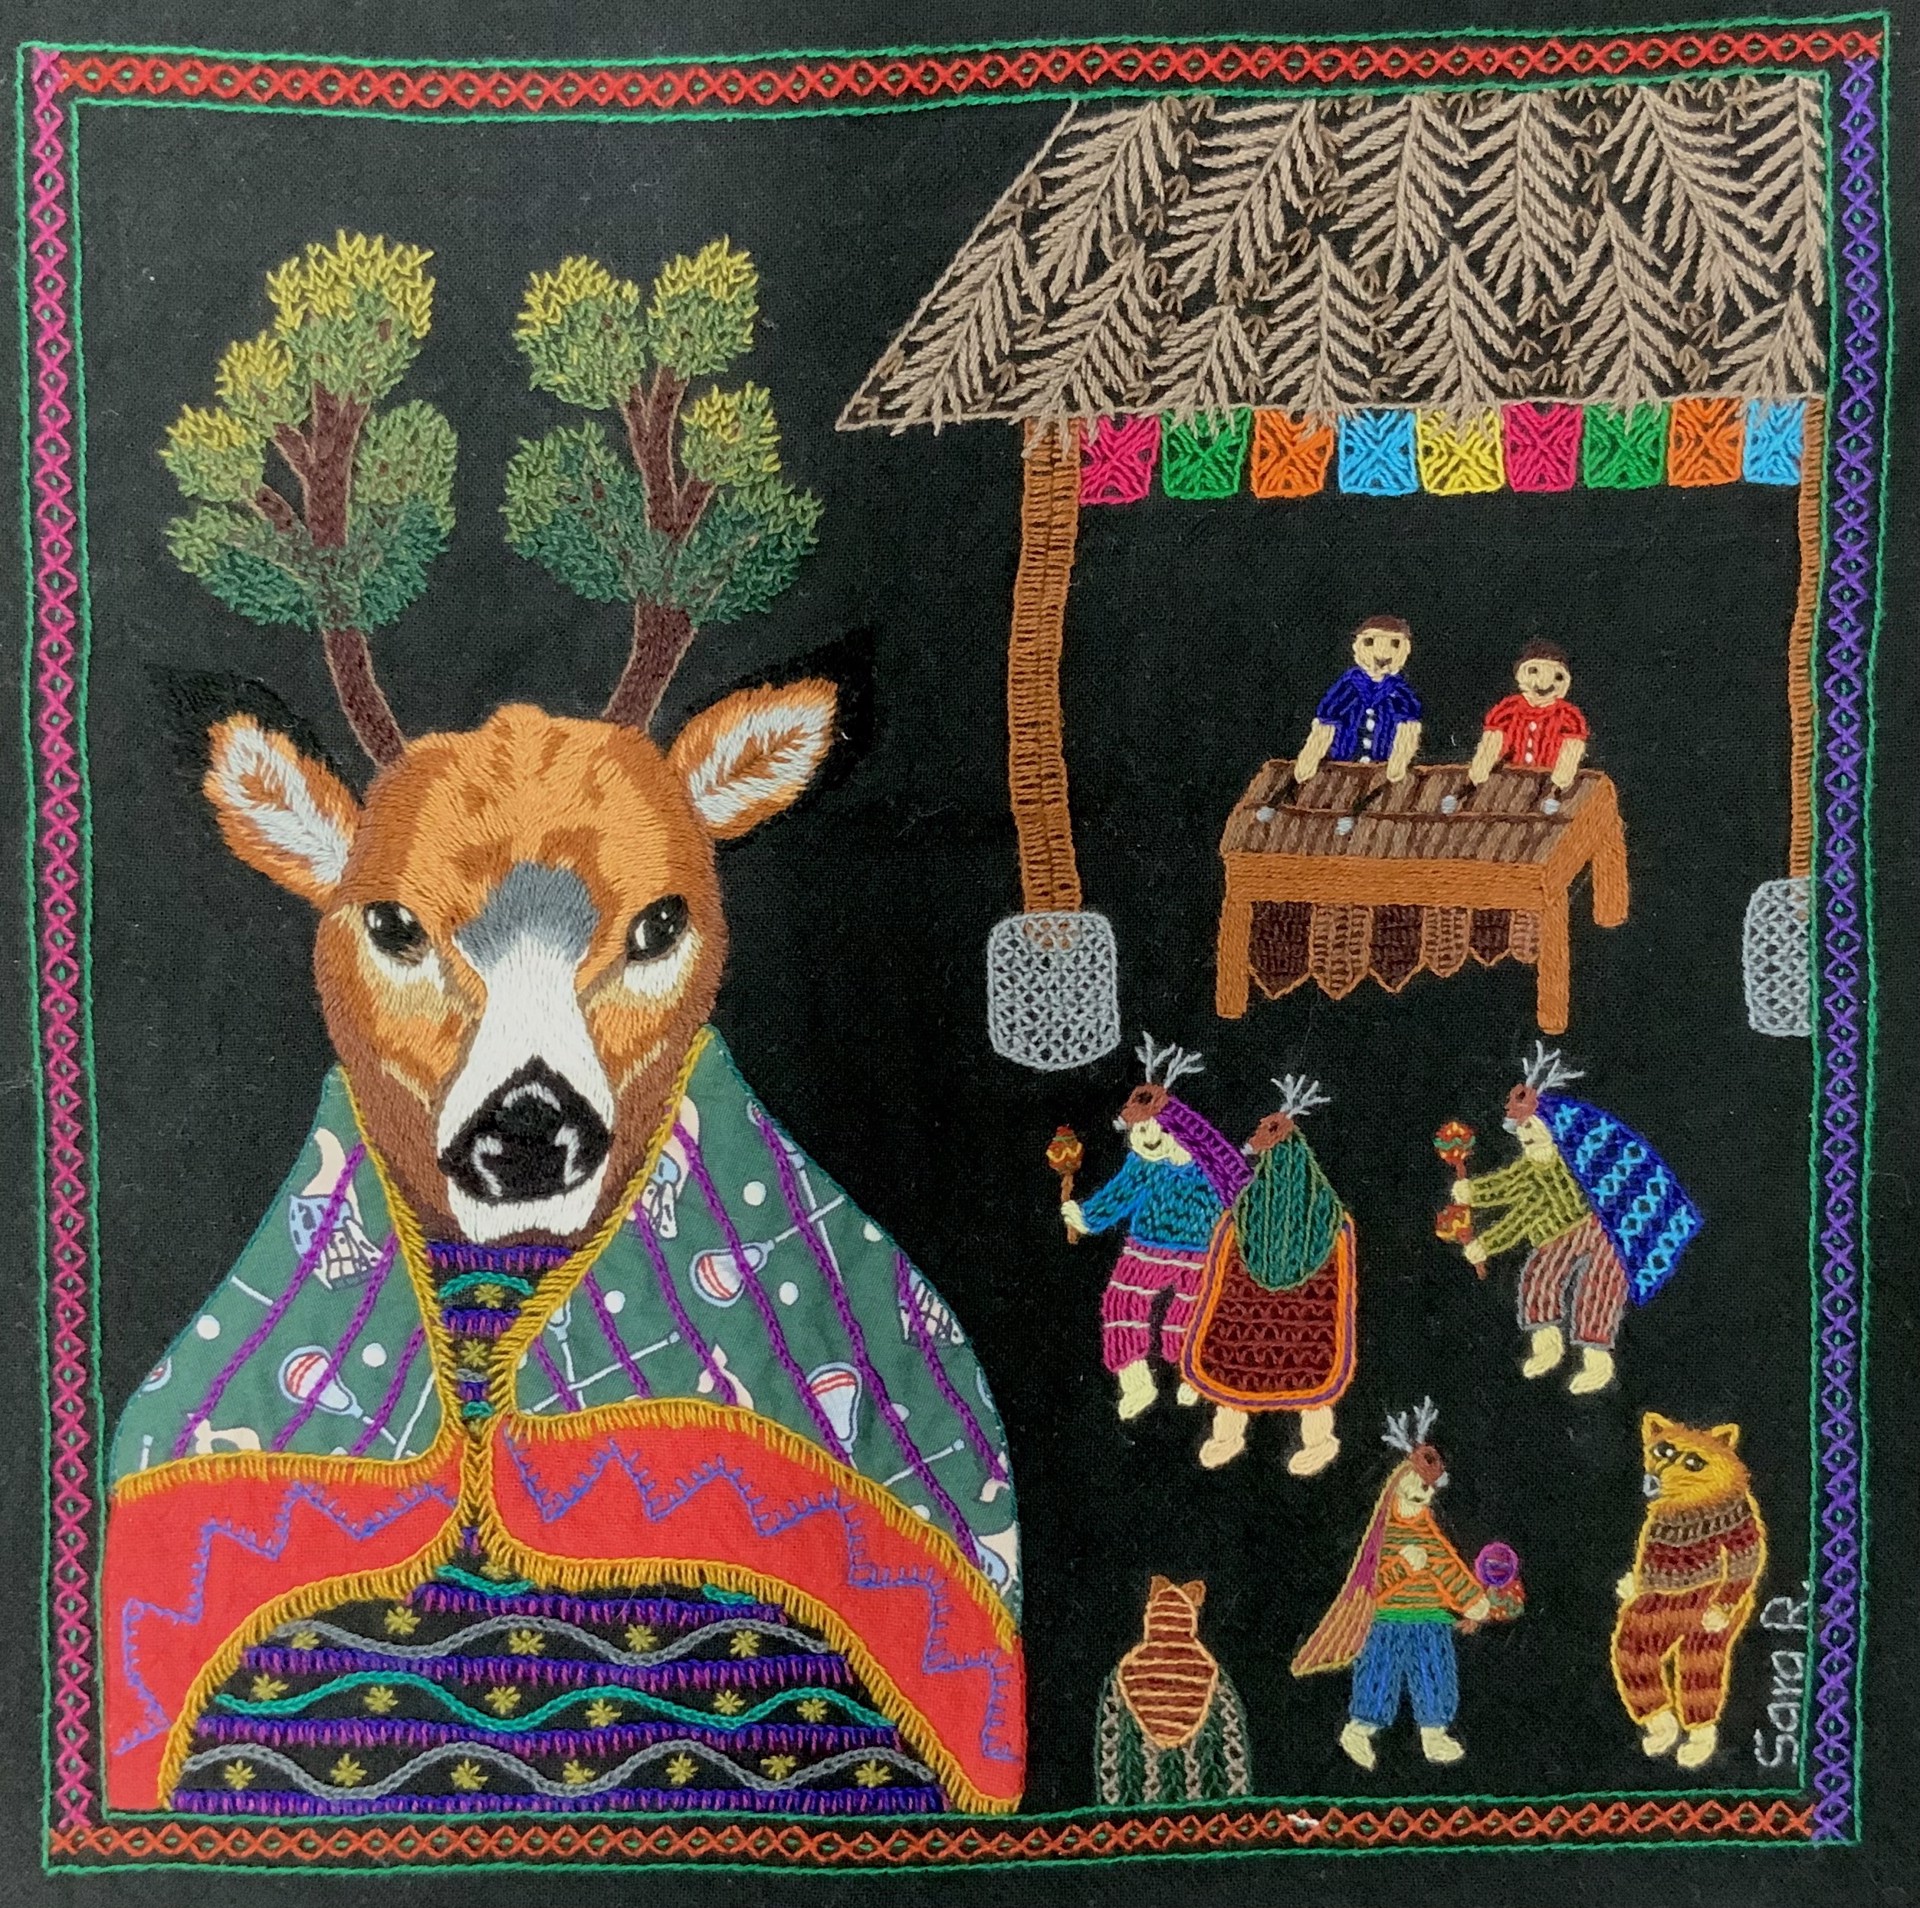 El Baile del Venado (The Dance of the Deer) by Multicolores